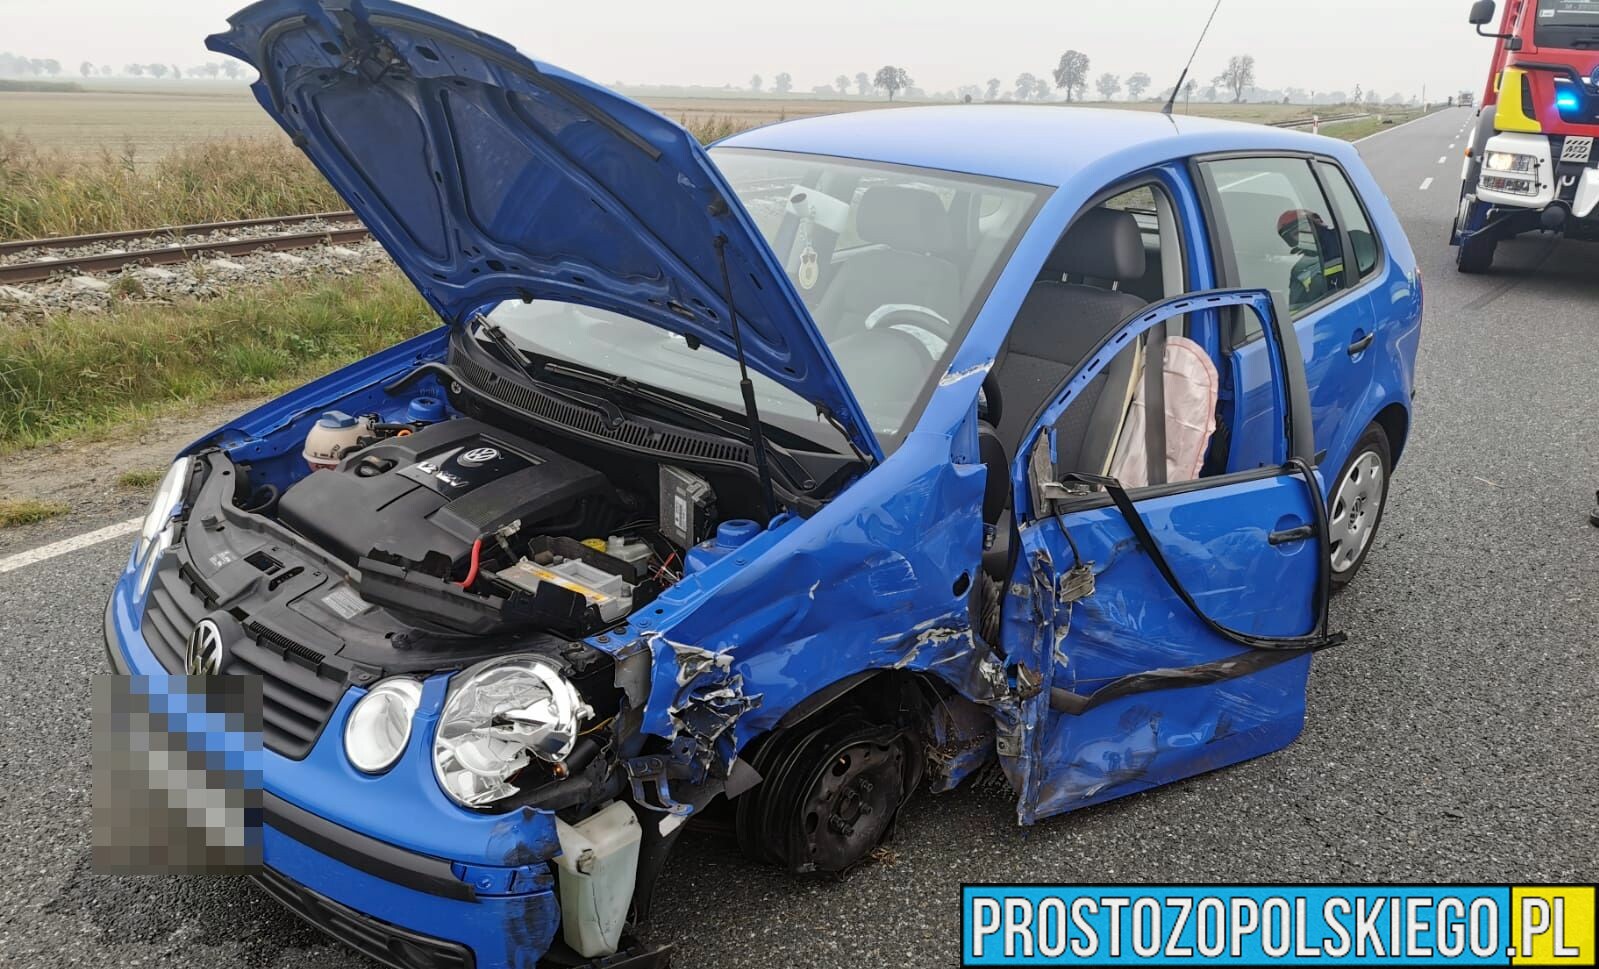 19-latka jadąca osobowym volkswagenem zderzyła się z ciężarowym Manem.(Zdjęcia)